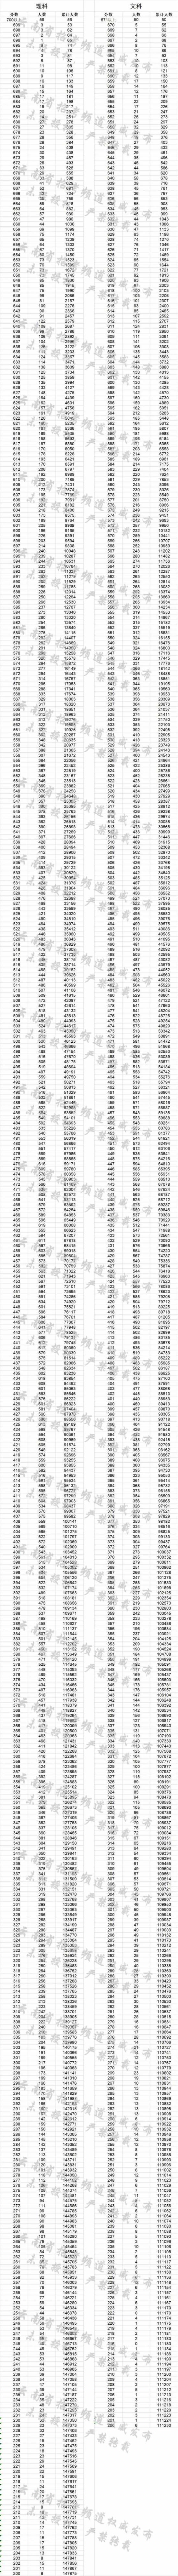 2018云南高考一分一段表（文科）